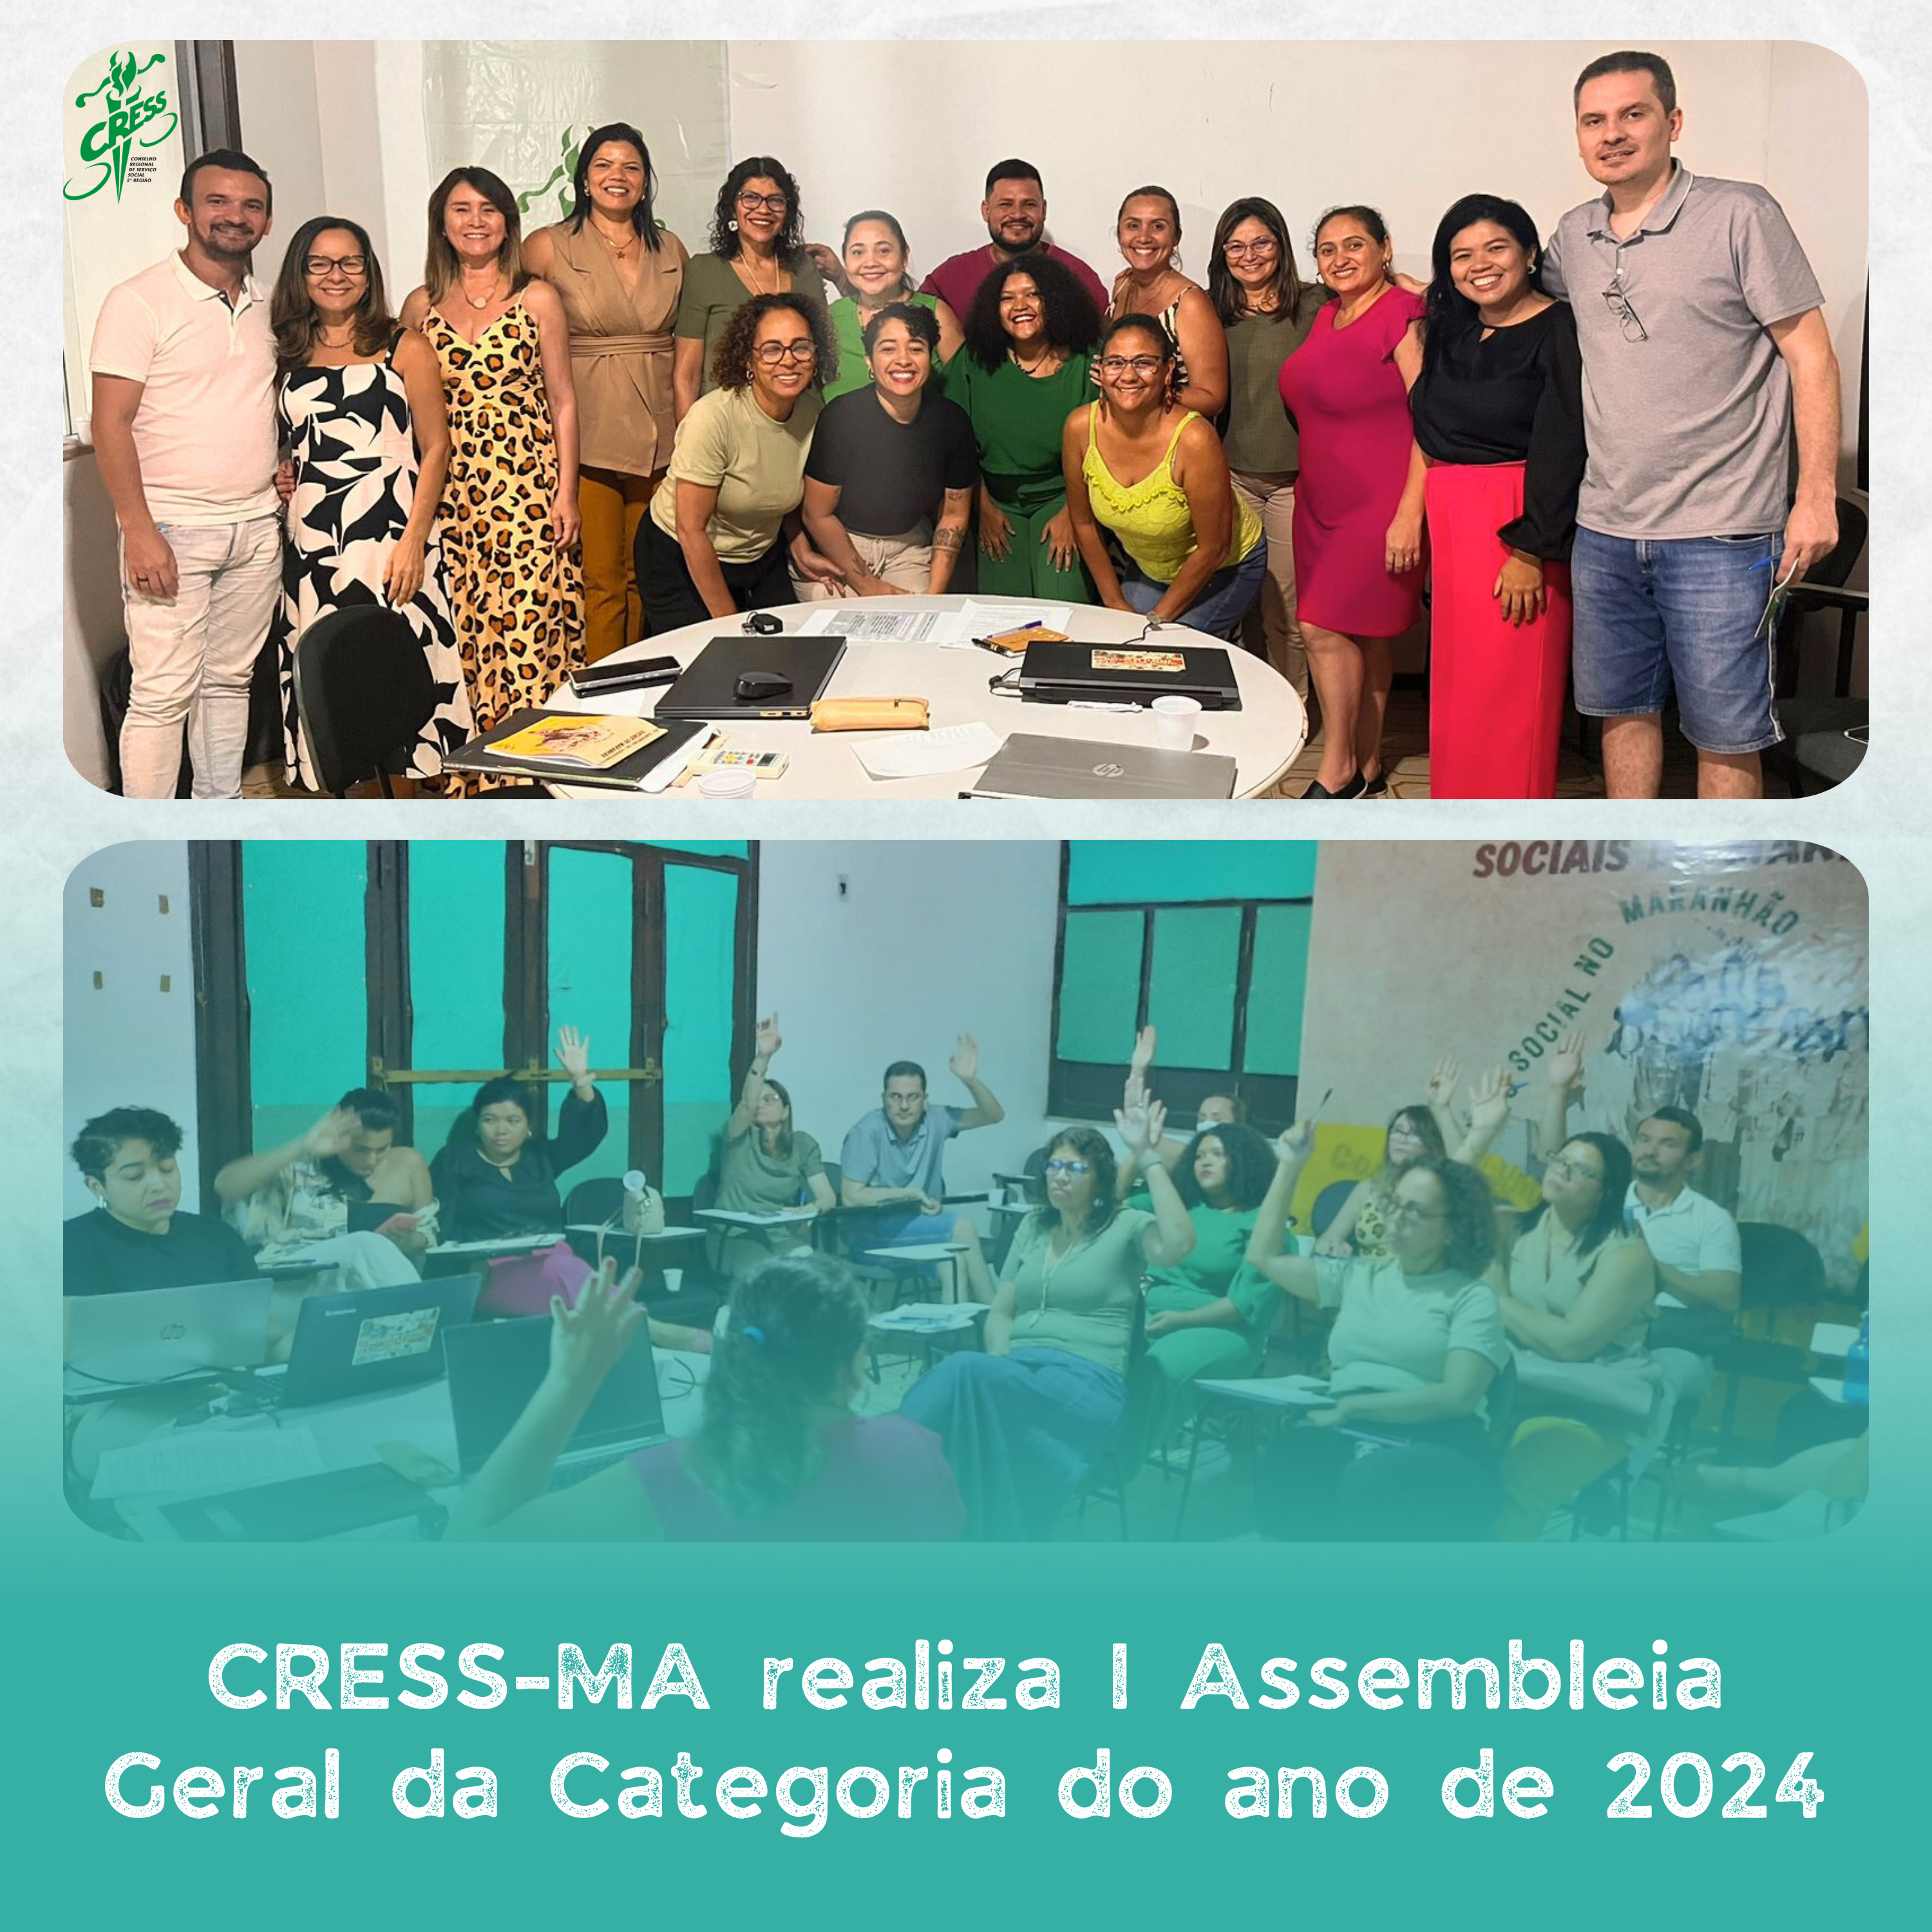 CRESS-MA realiza I Assembleia Geral da Categoria do ano de 2024